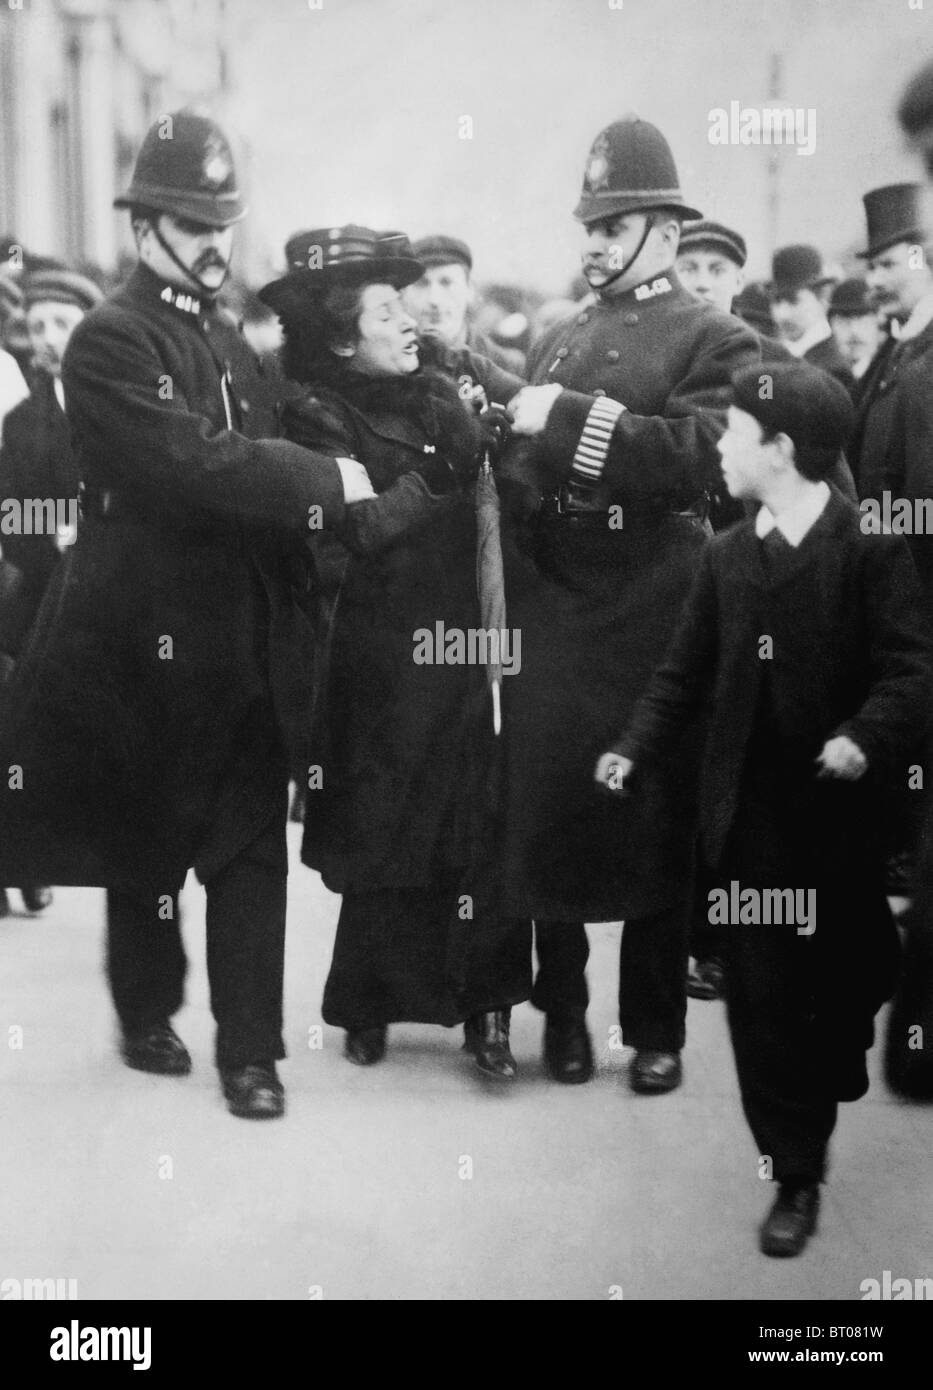 Foto c1910 - 1915 eine Frauenrechtlerin, während der Kampagne von der Polizei in London verhaftet, Frauen das Wahlrecht zu gewinnen. Stockfoto